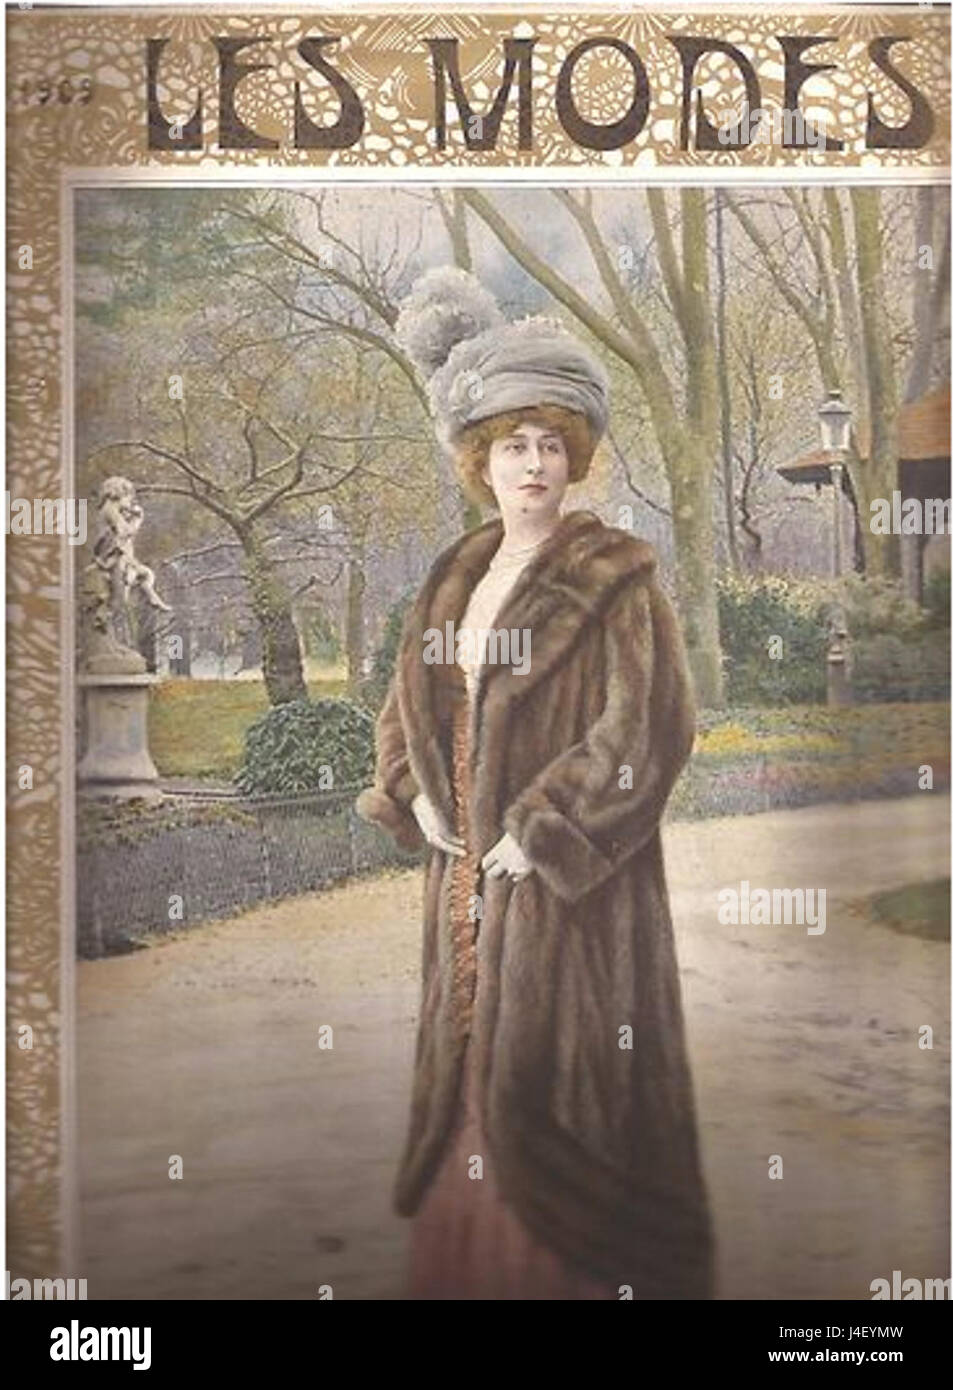 Les Modes 1909  sable fur coat Stock Photo